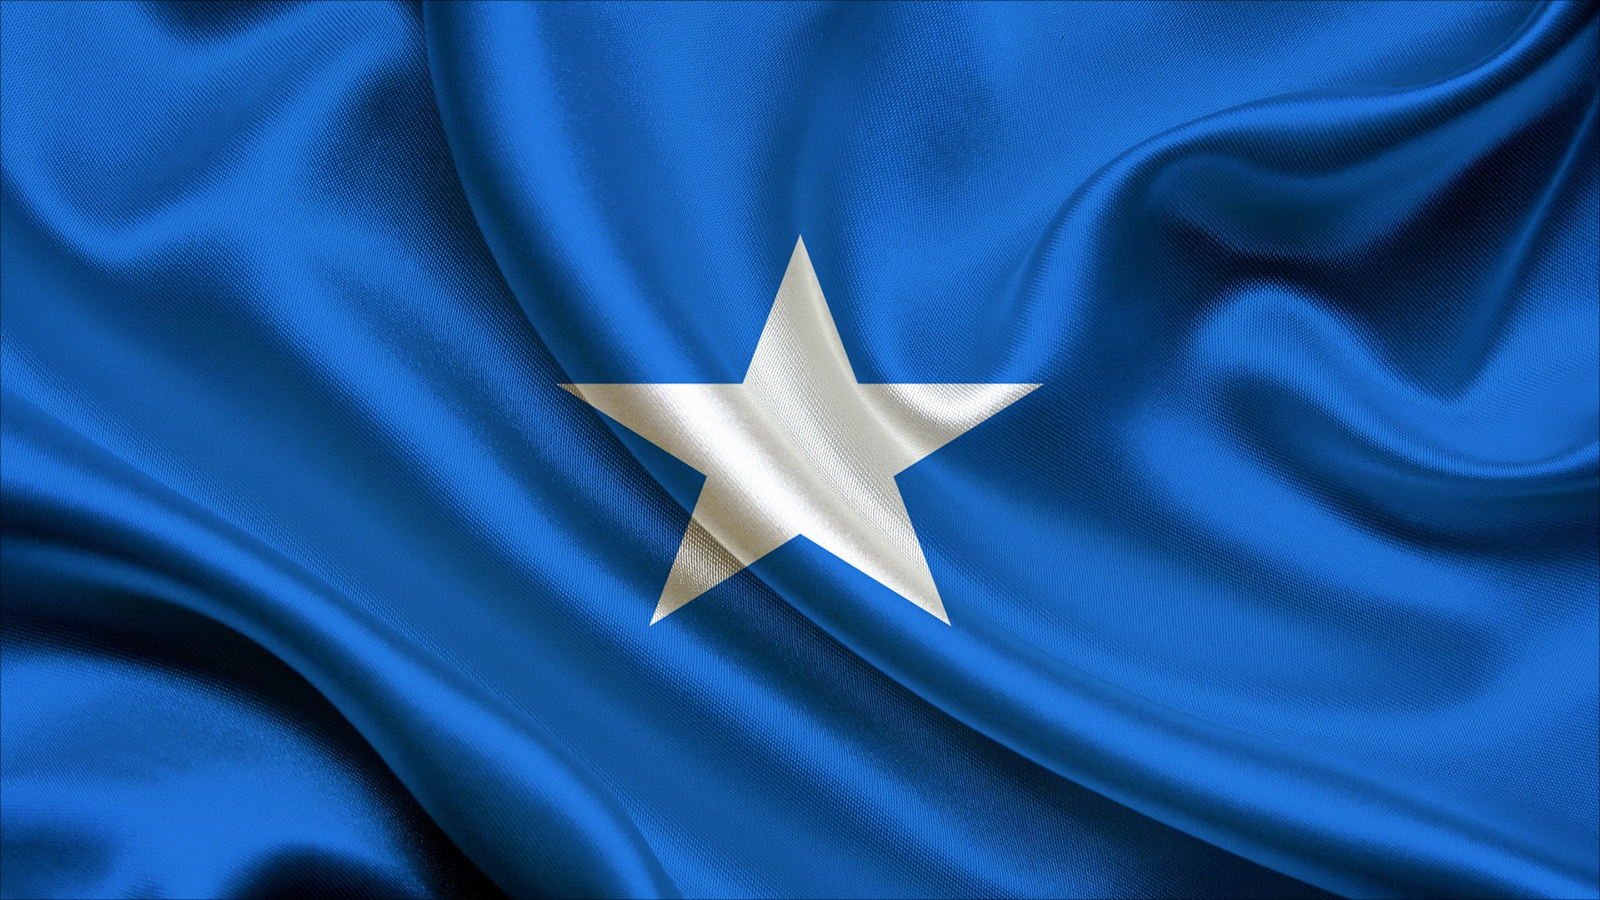 أمة أهملت ماضيها وتسير بجنون نحو طمس المعالم، حتى أصبحت الصومال دولة هامشية ومجهولة في المخيلة العالمية! ولم تكن كذلك، بل كانت مؤثرة في محيطها